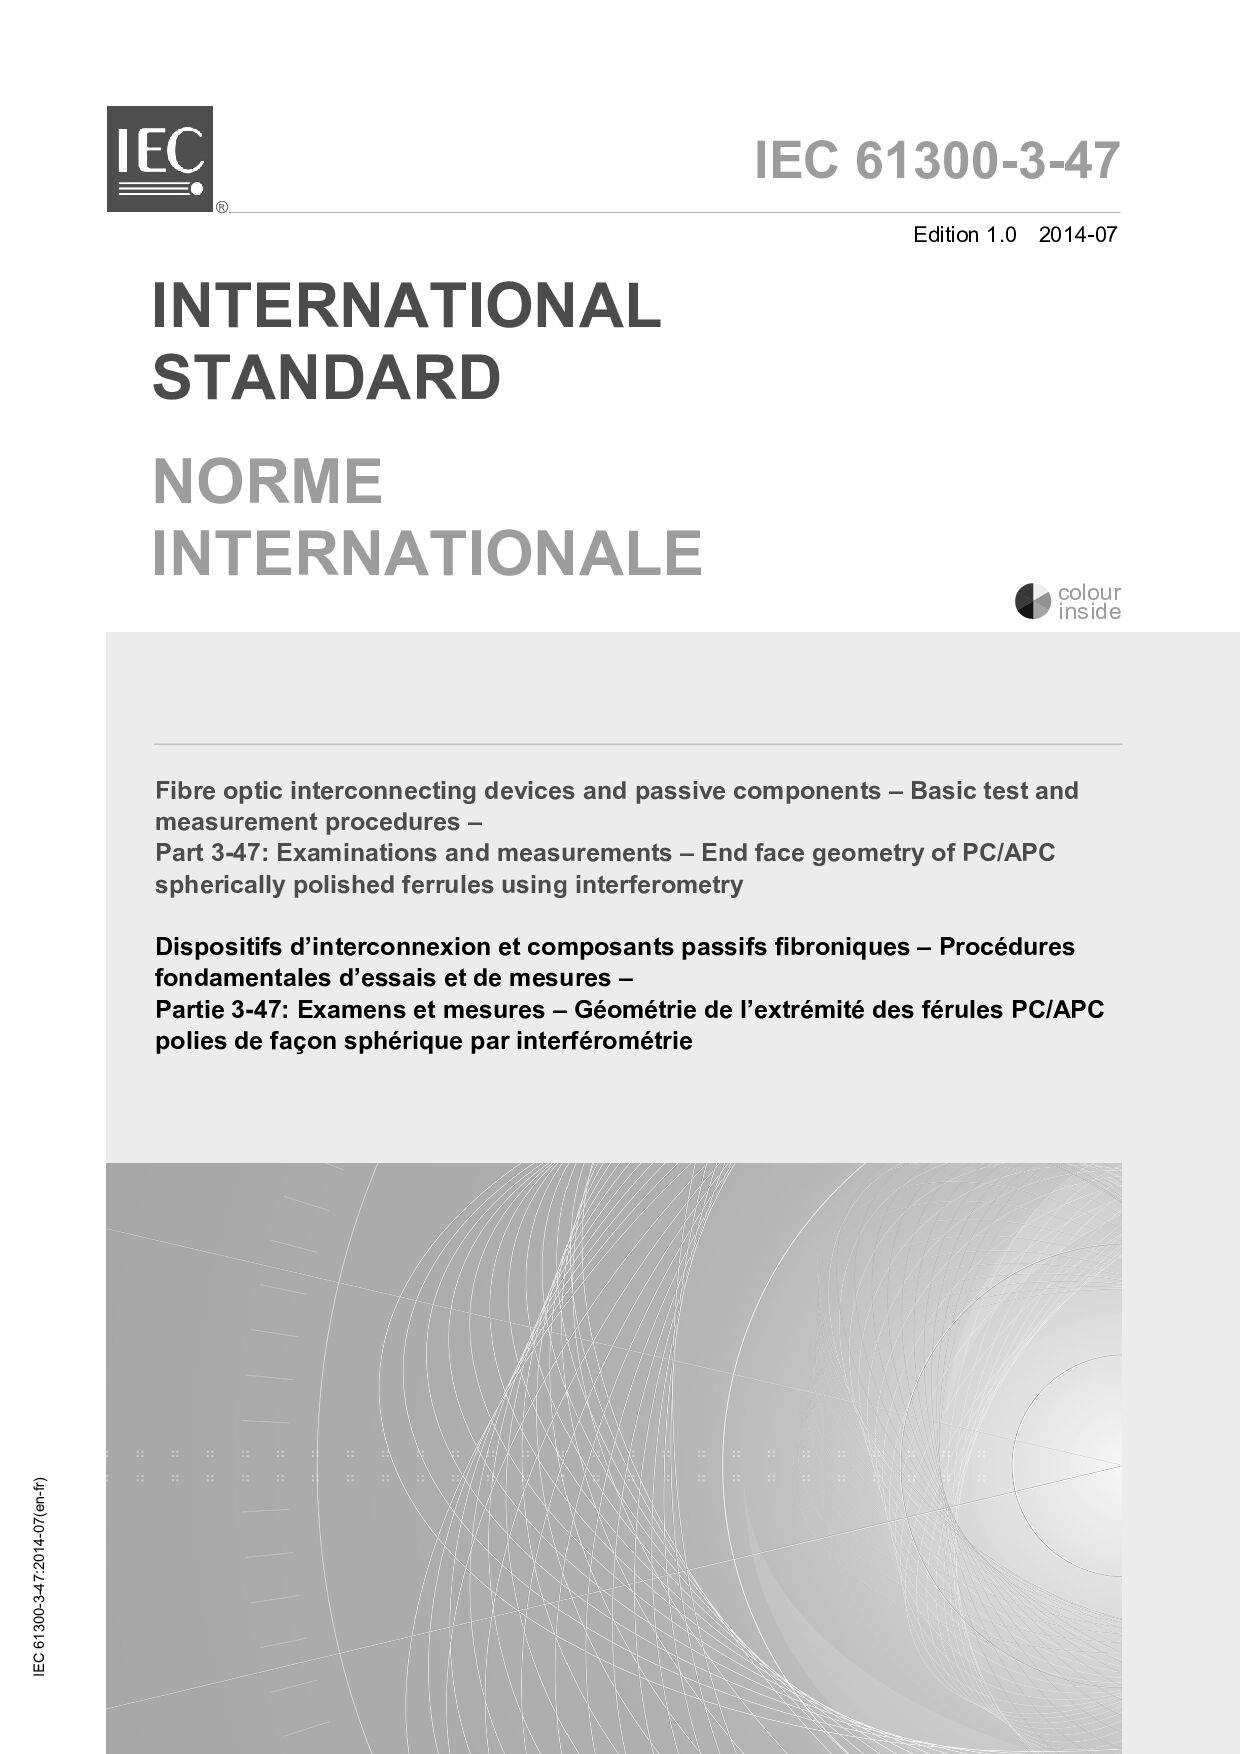 IEC 61300-3-47:2014封面图